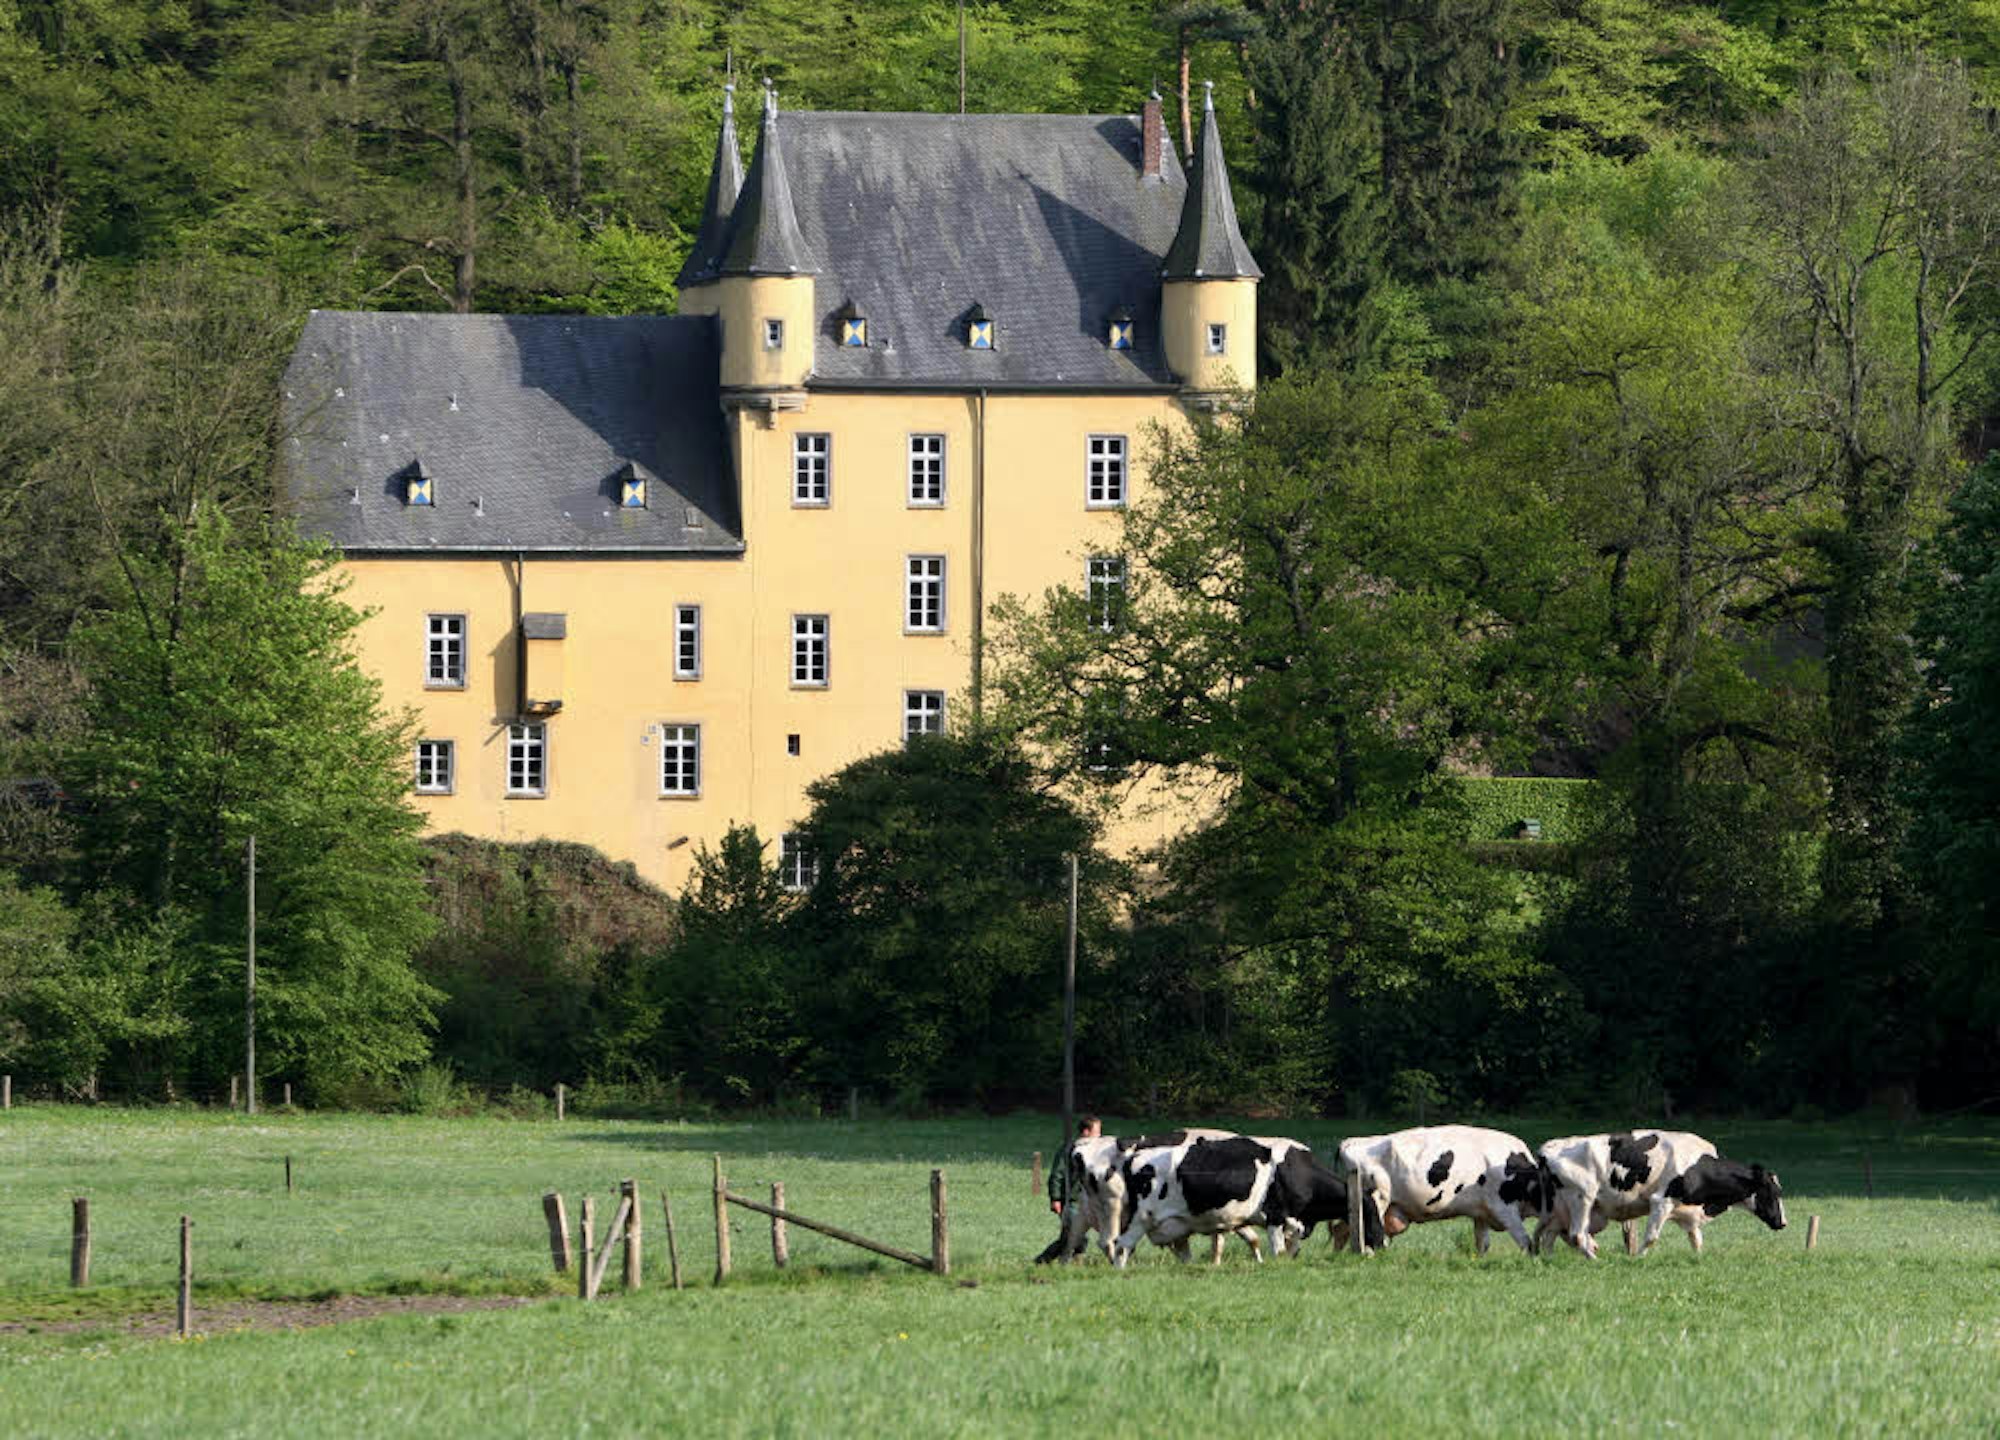 Auf Schloss Strauweiler auf der anderen Seite des Dhünntals wohnt ein Adeliger: Hubertus Prinz zu Sayn-Wittgenstein.